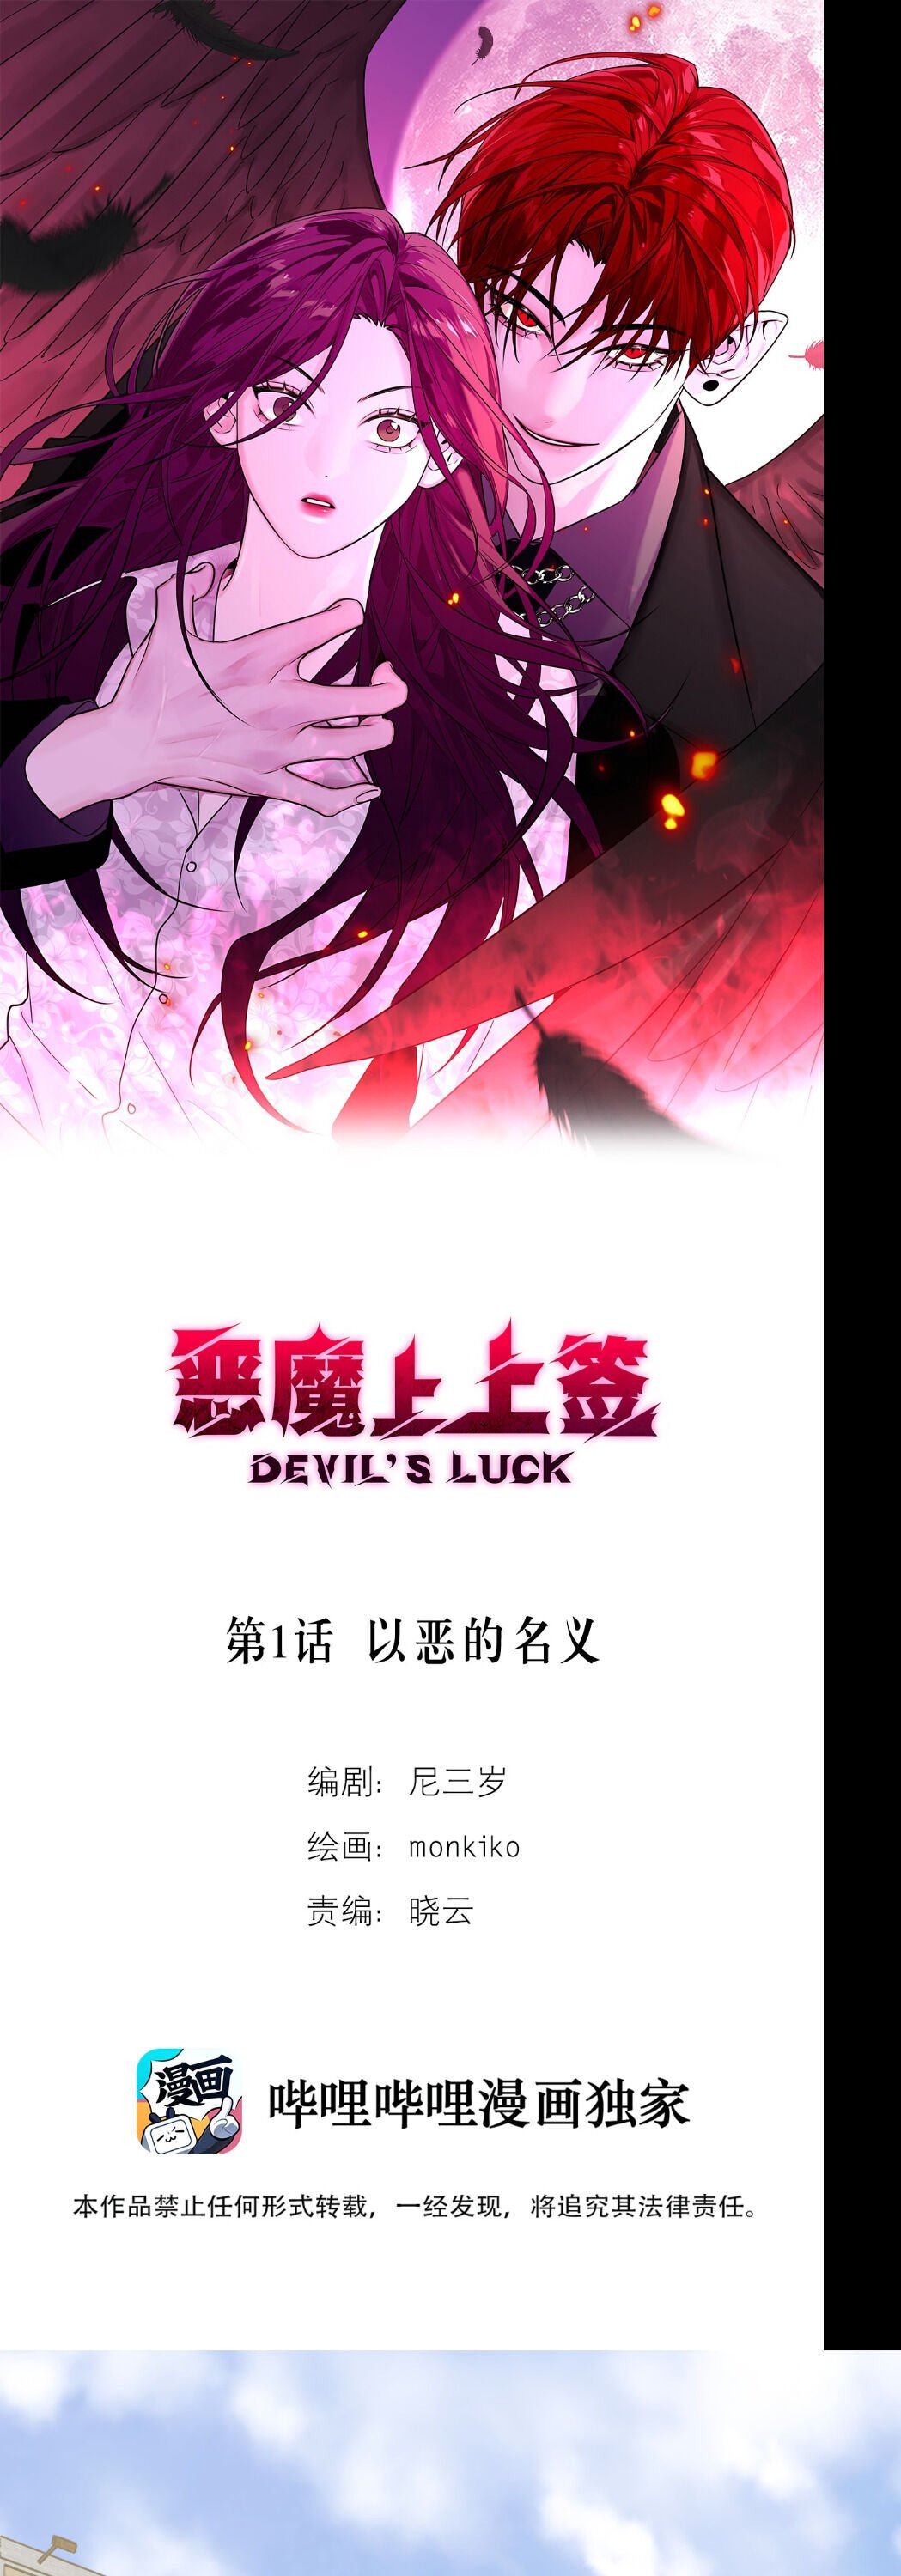 Devil’s Luck chapter 1